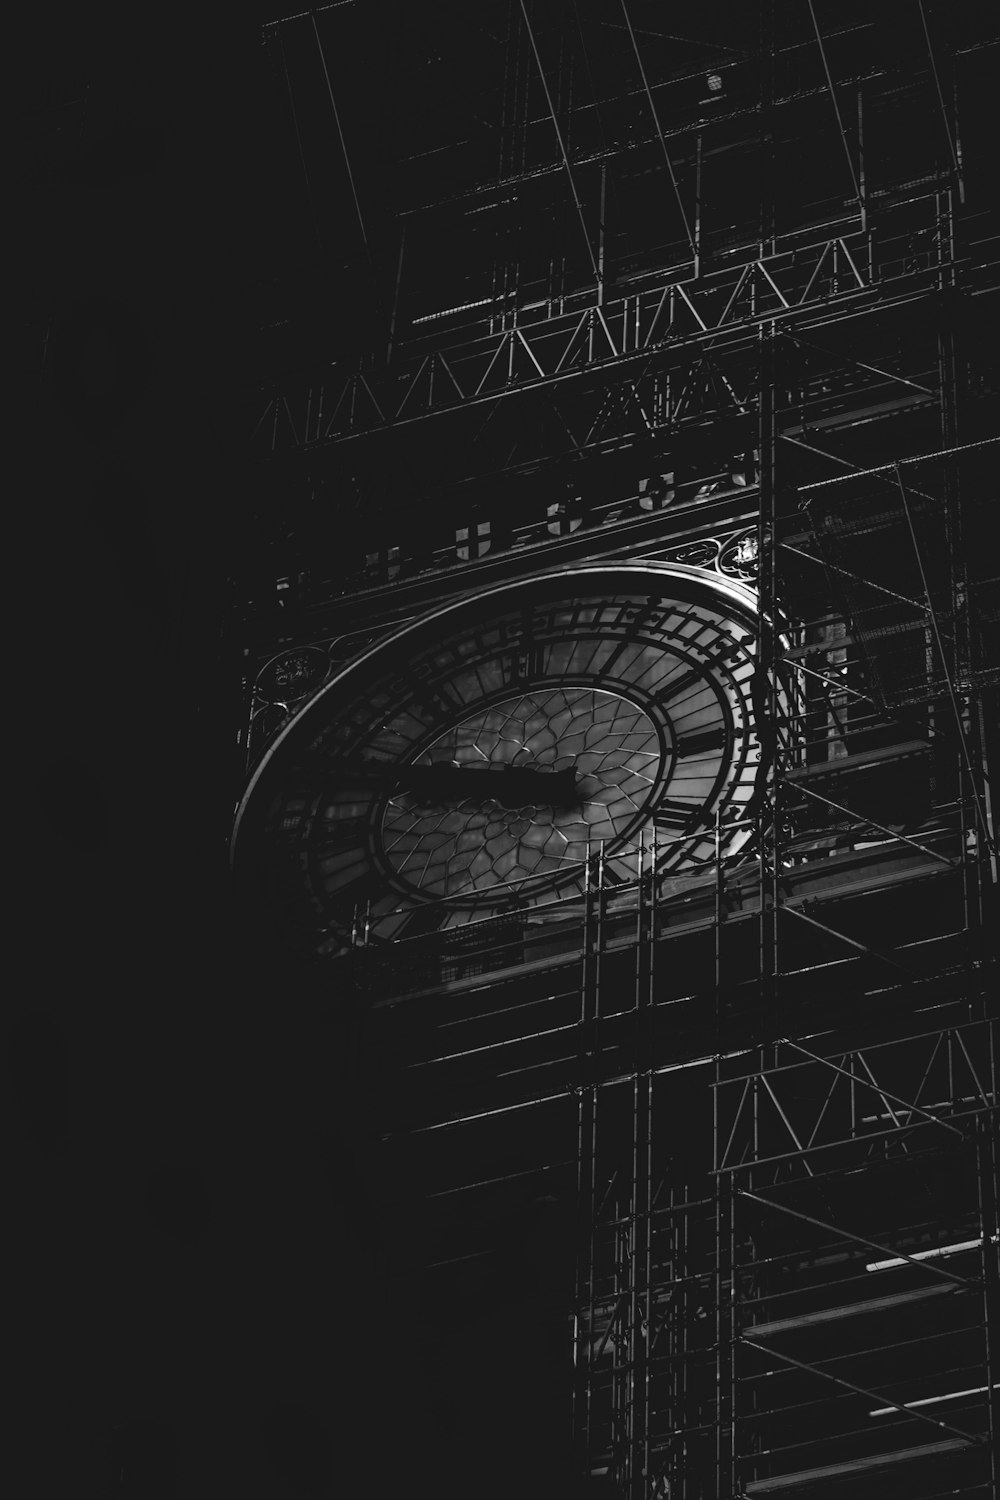 Una foto en blanco y negro de una torre del reloj